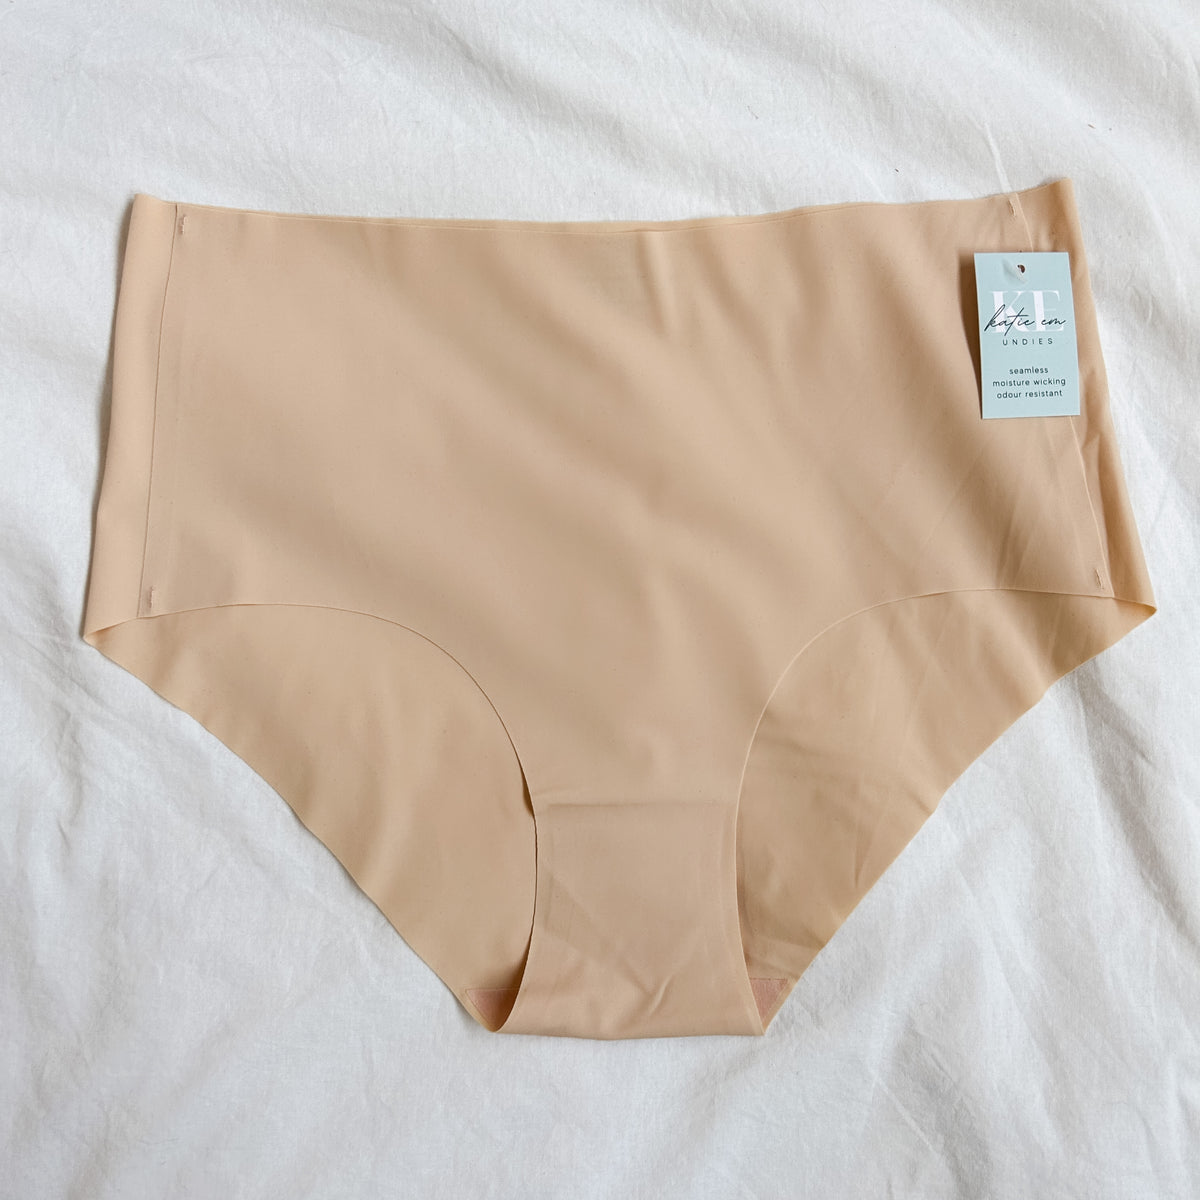 New PLUMS Underwear Co. Womens XXXL 3 Pack Laser-Cut Seamless